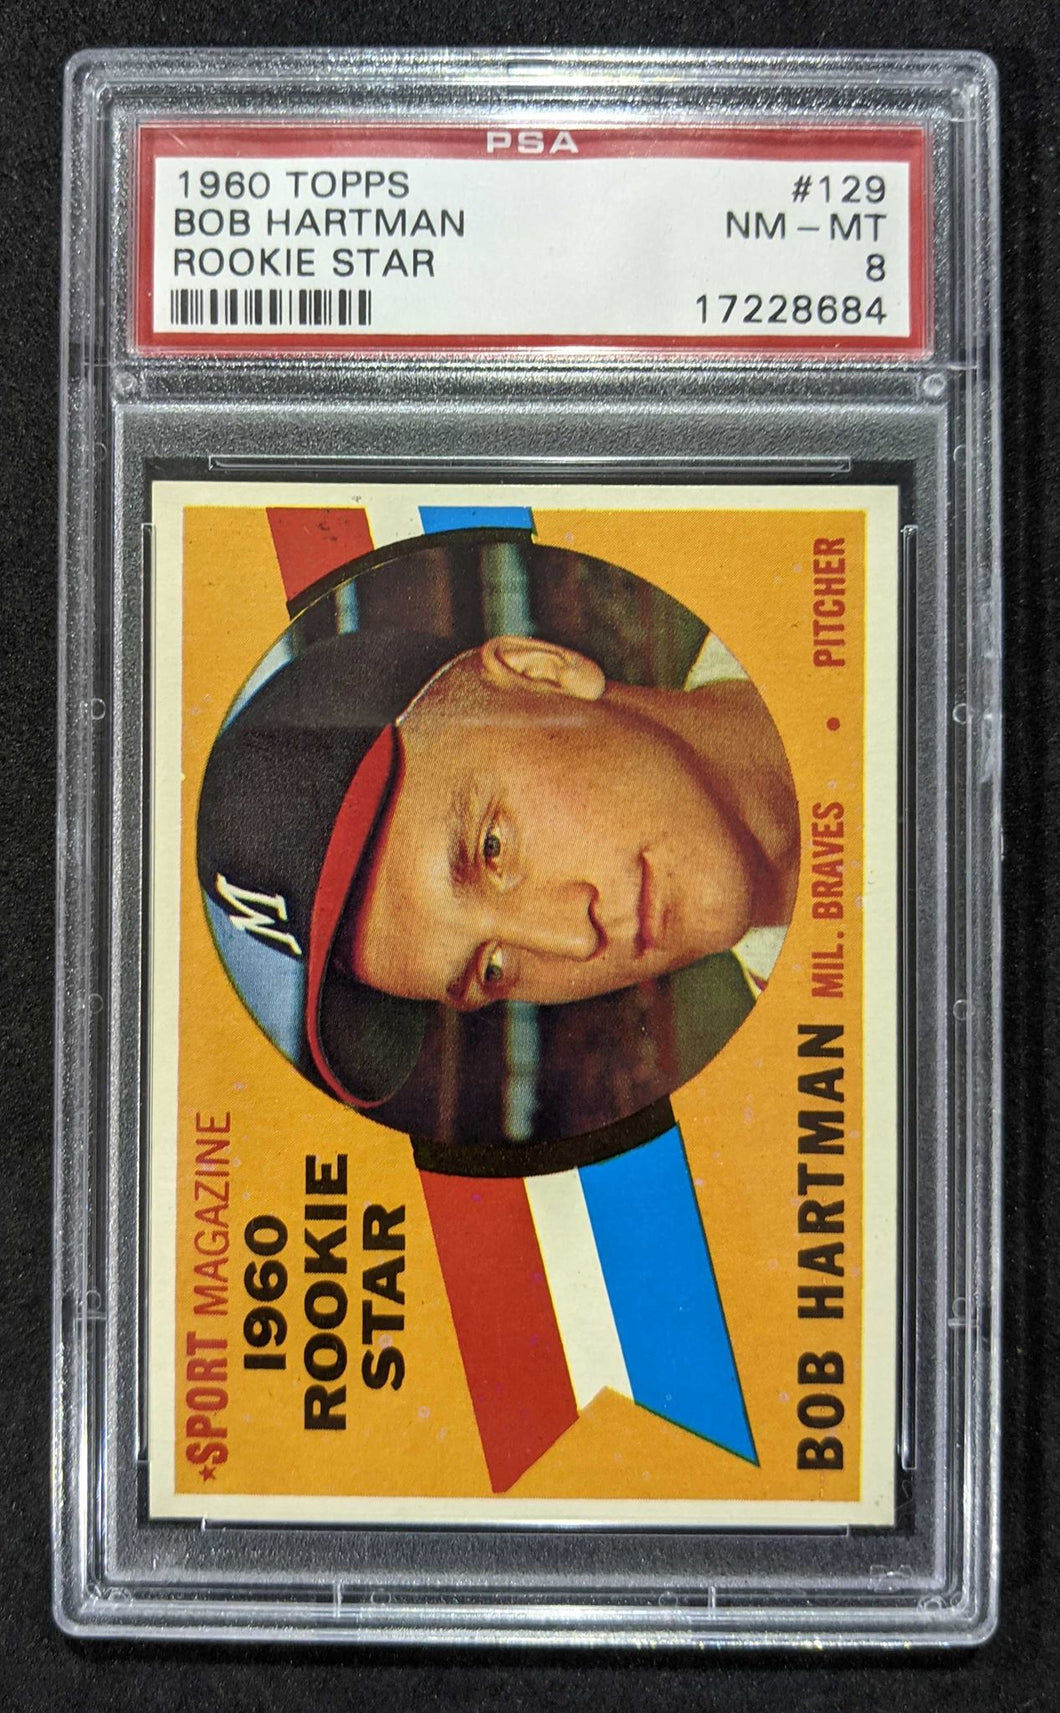 1960 Topps Bob Hartman Rookie Star #129 PSA NM-MT 8, 17228684